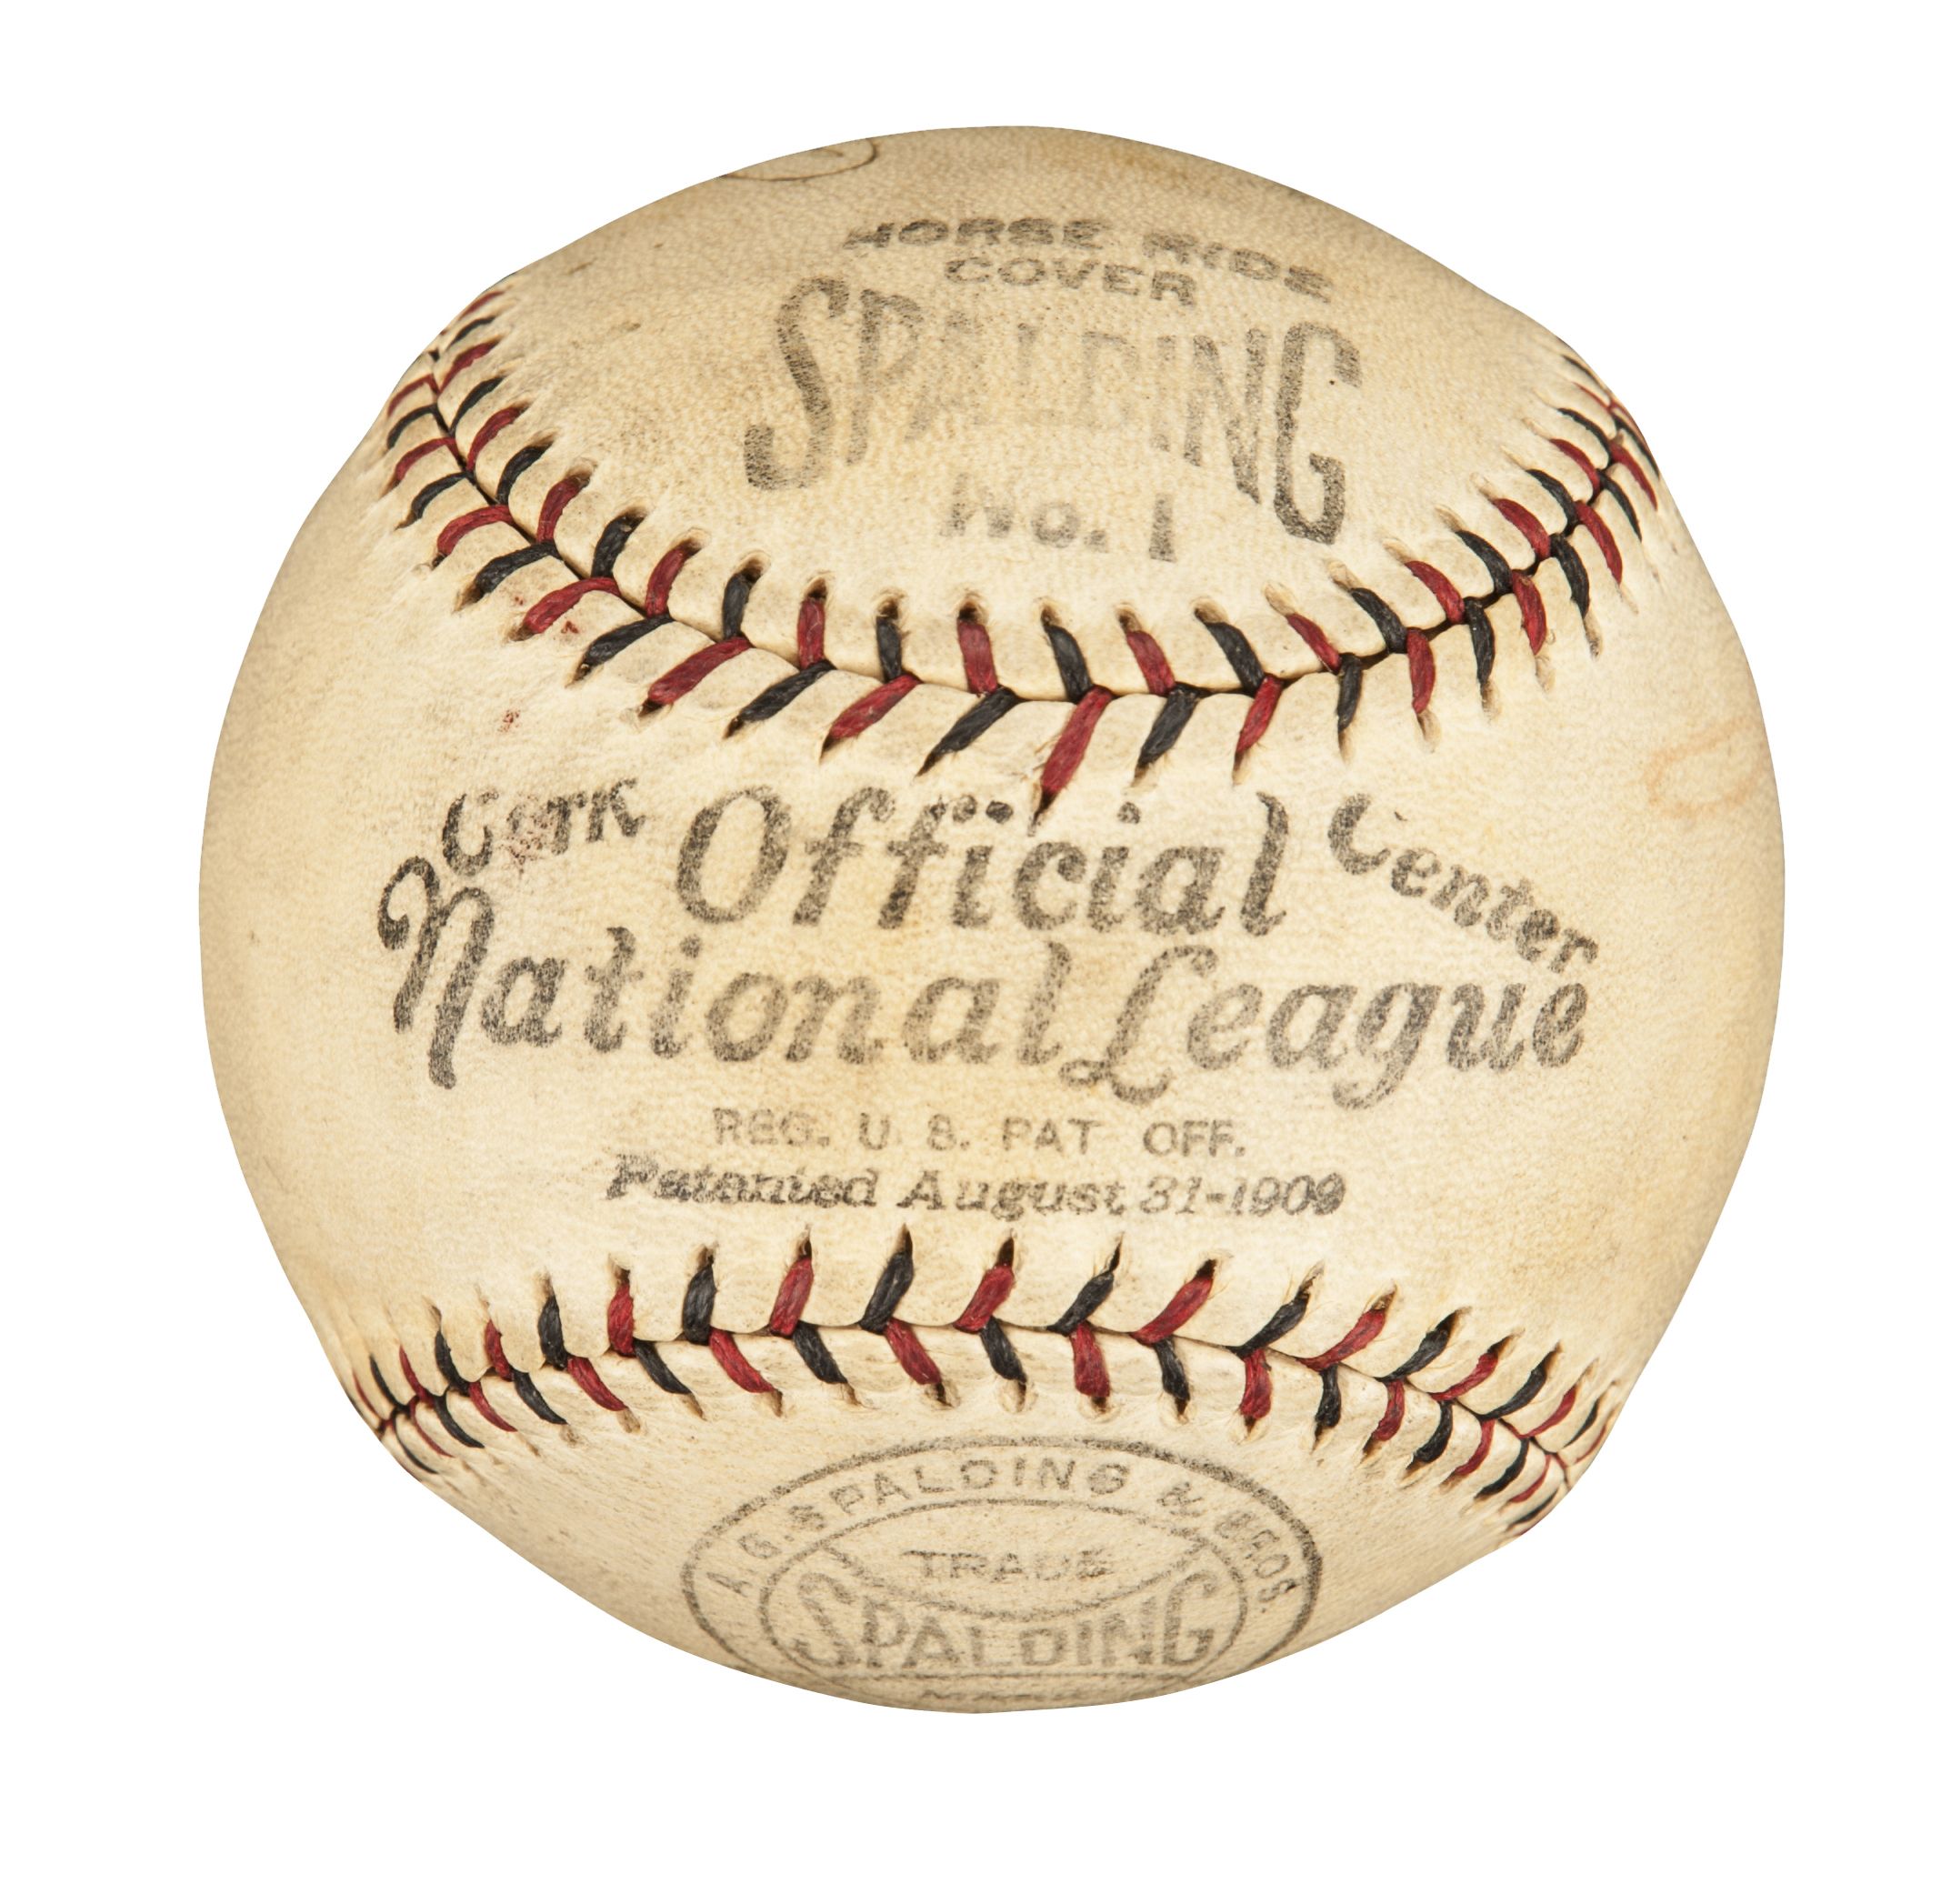 Vintage Signed Baseballs 106